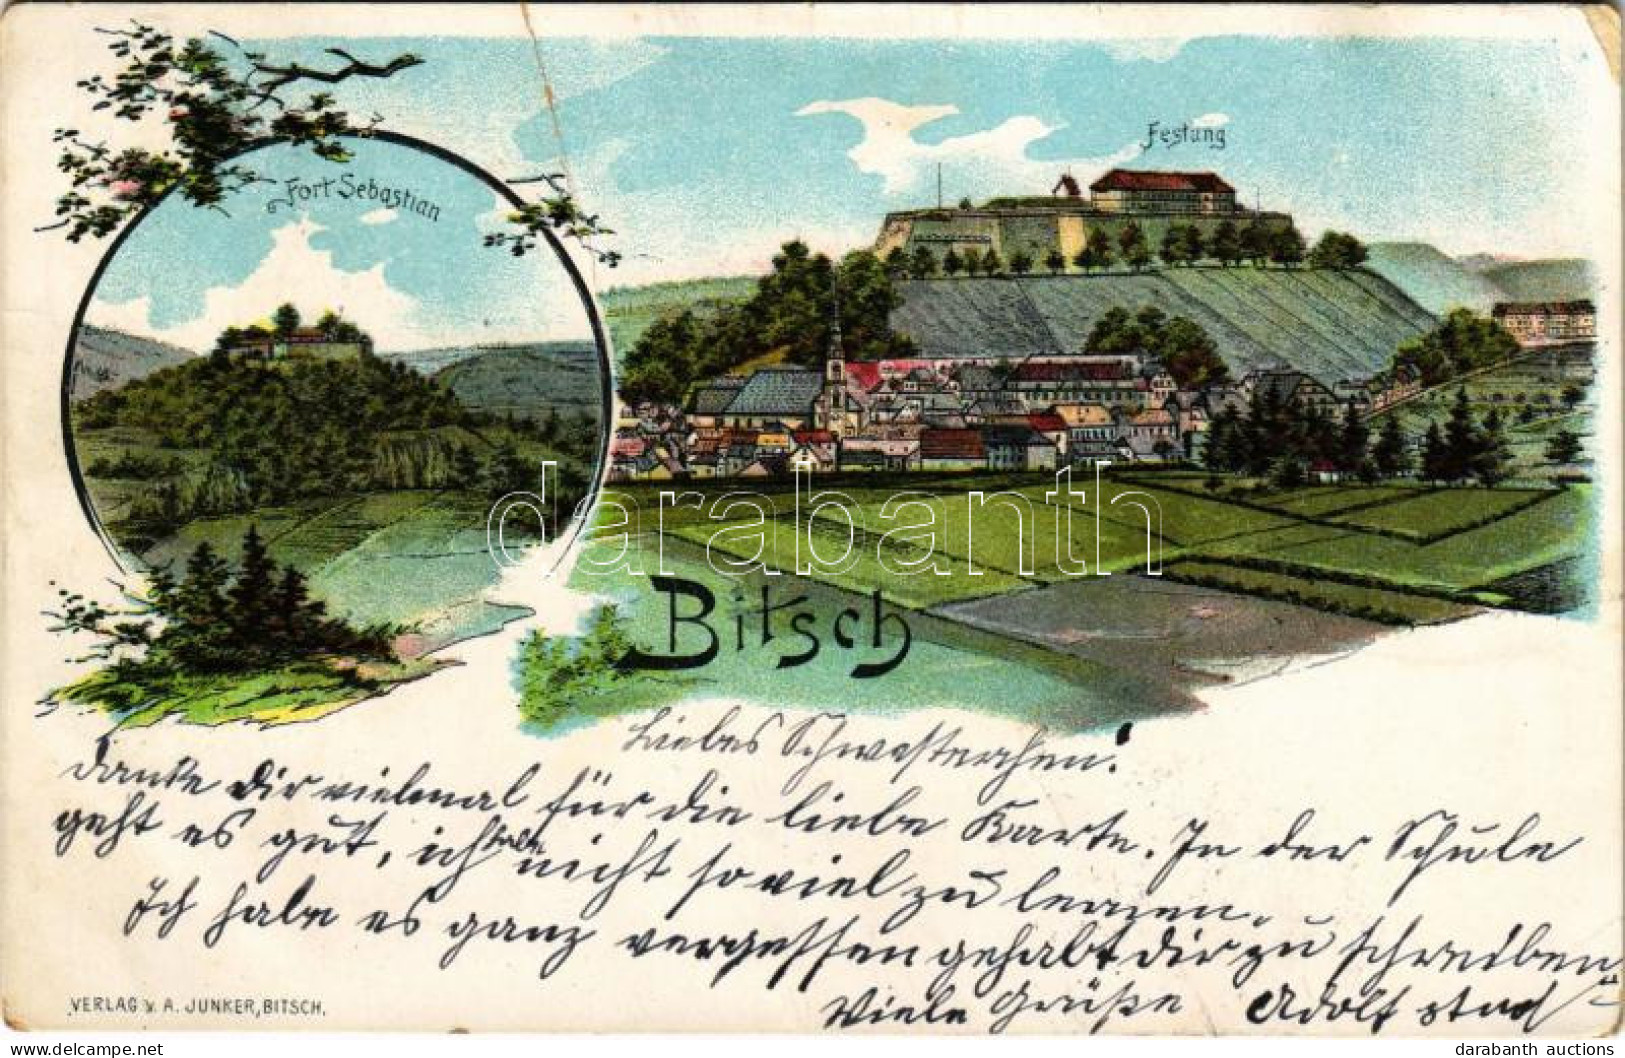 T3/T4 1906 Bitsch, Fort Sebastian, Festung / Fortress, Citadel. Verlag V. A. Junker Art Nouveau Litho (fa) - Non Classés